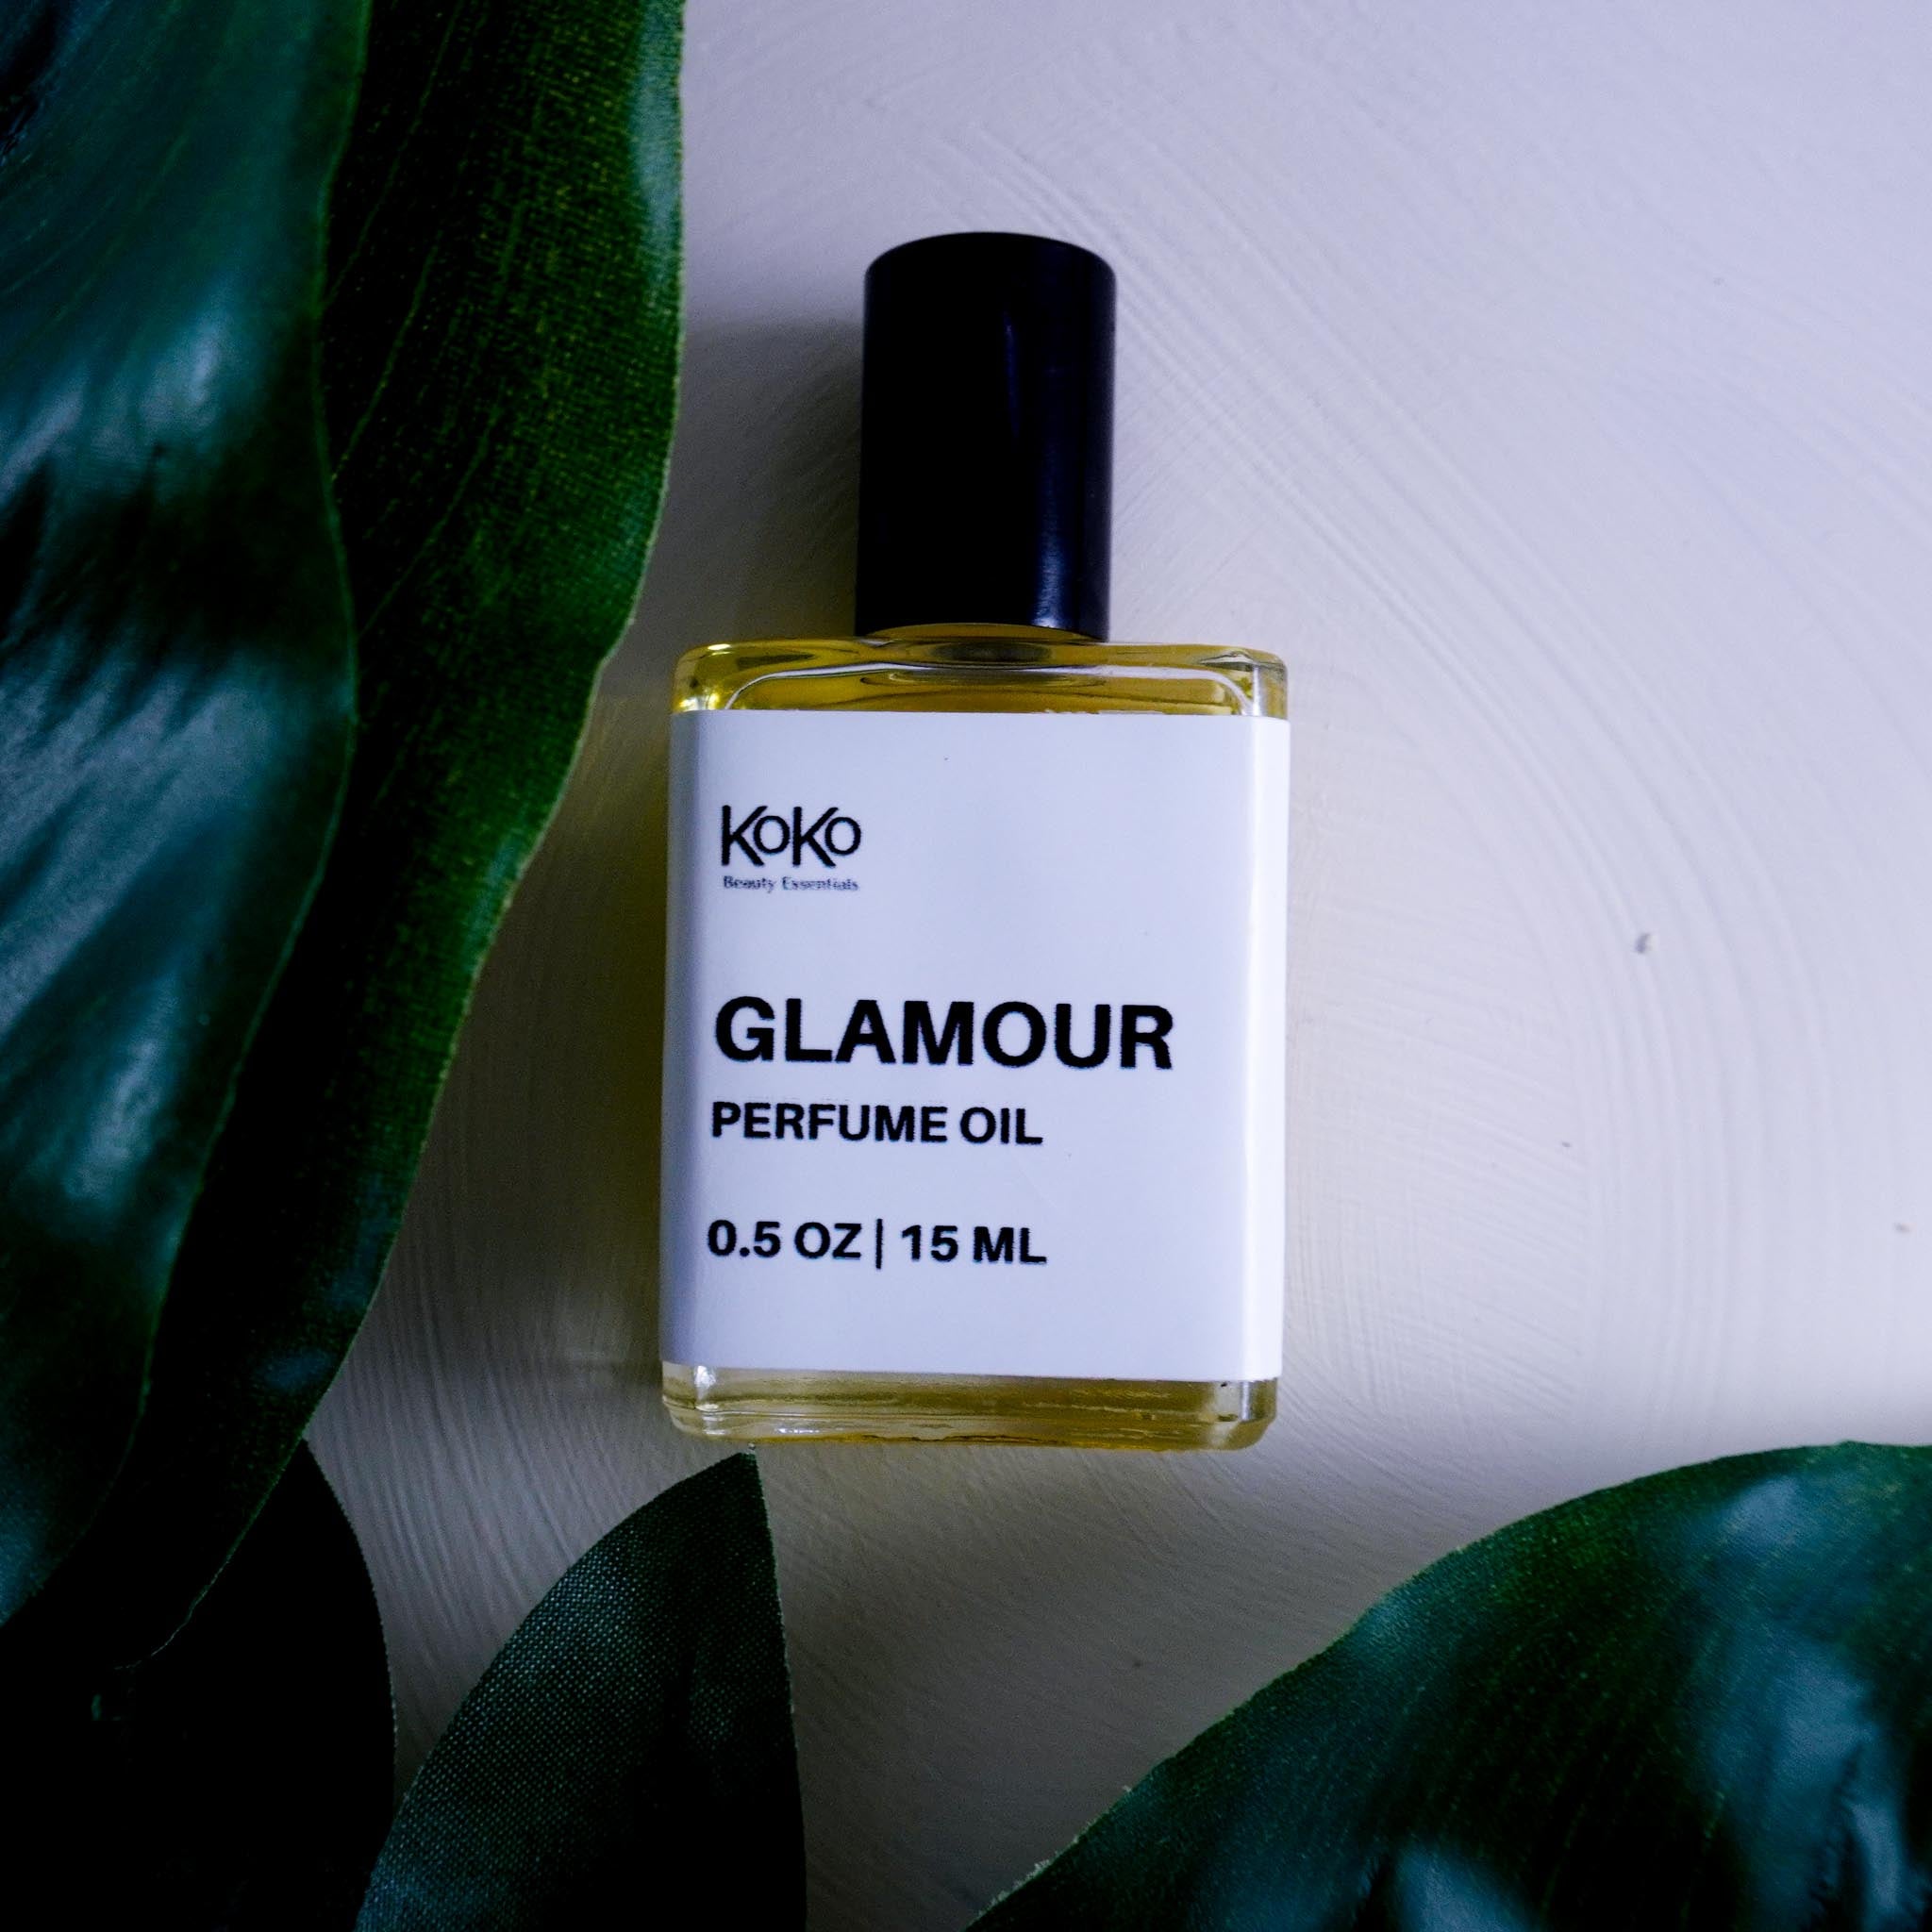 Glamour Perfume Oil